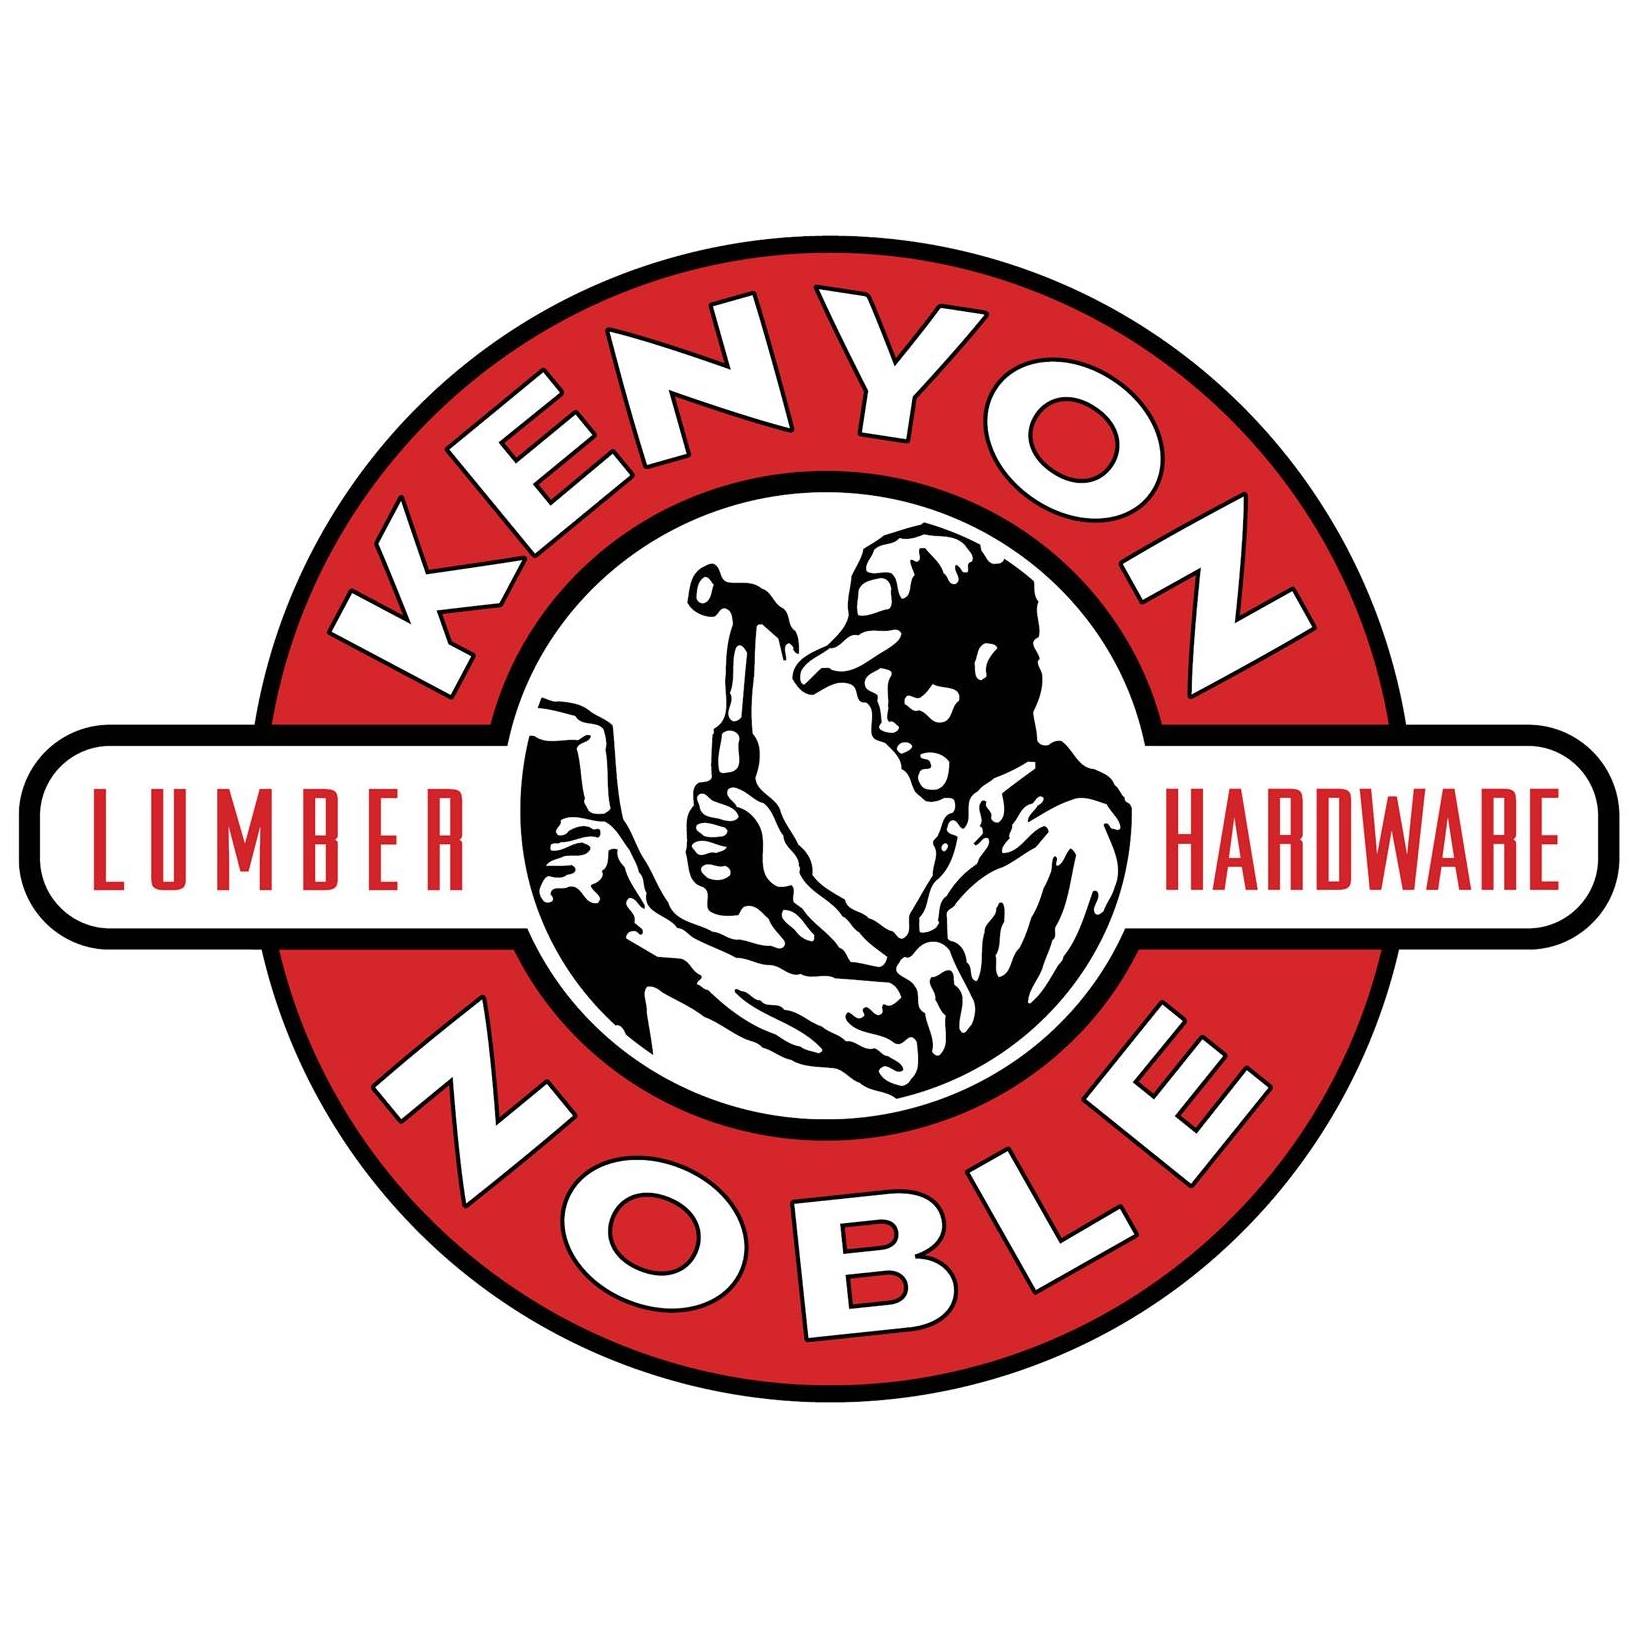 Company logo of Kenyon Noble Lumber & Hardware